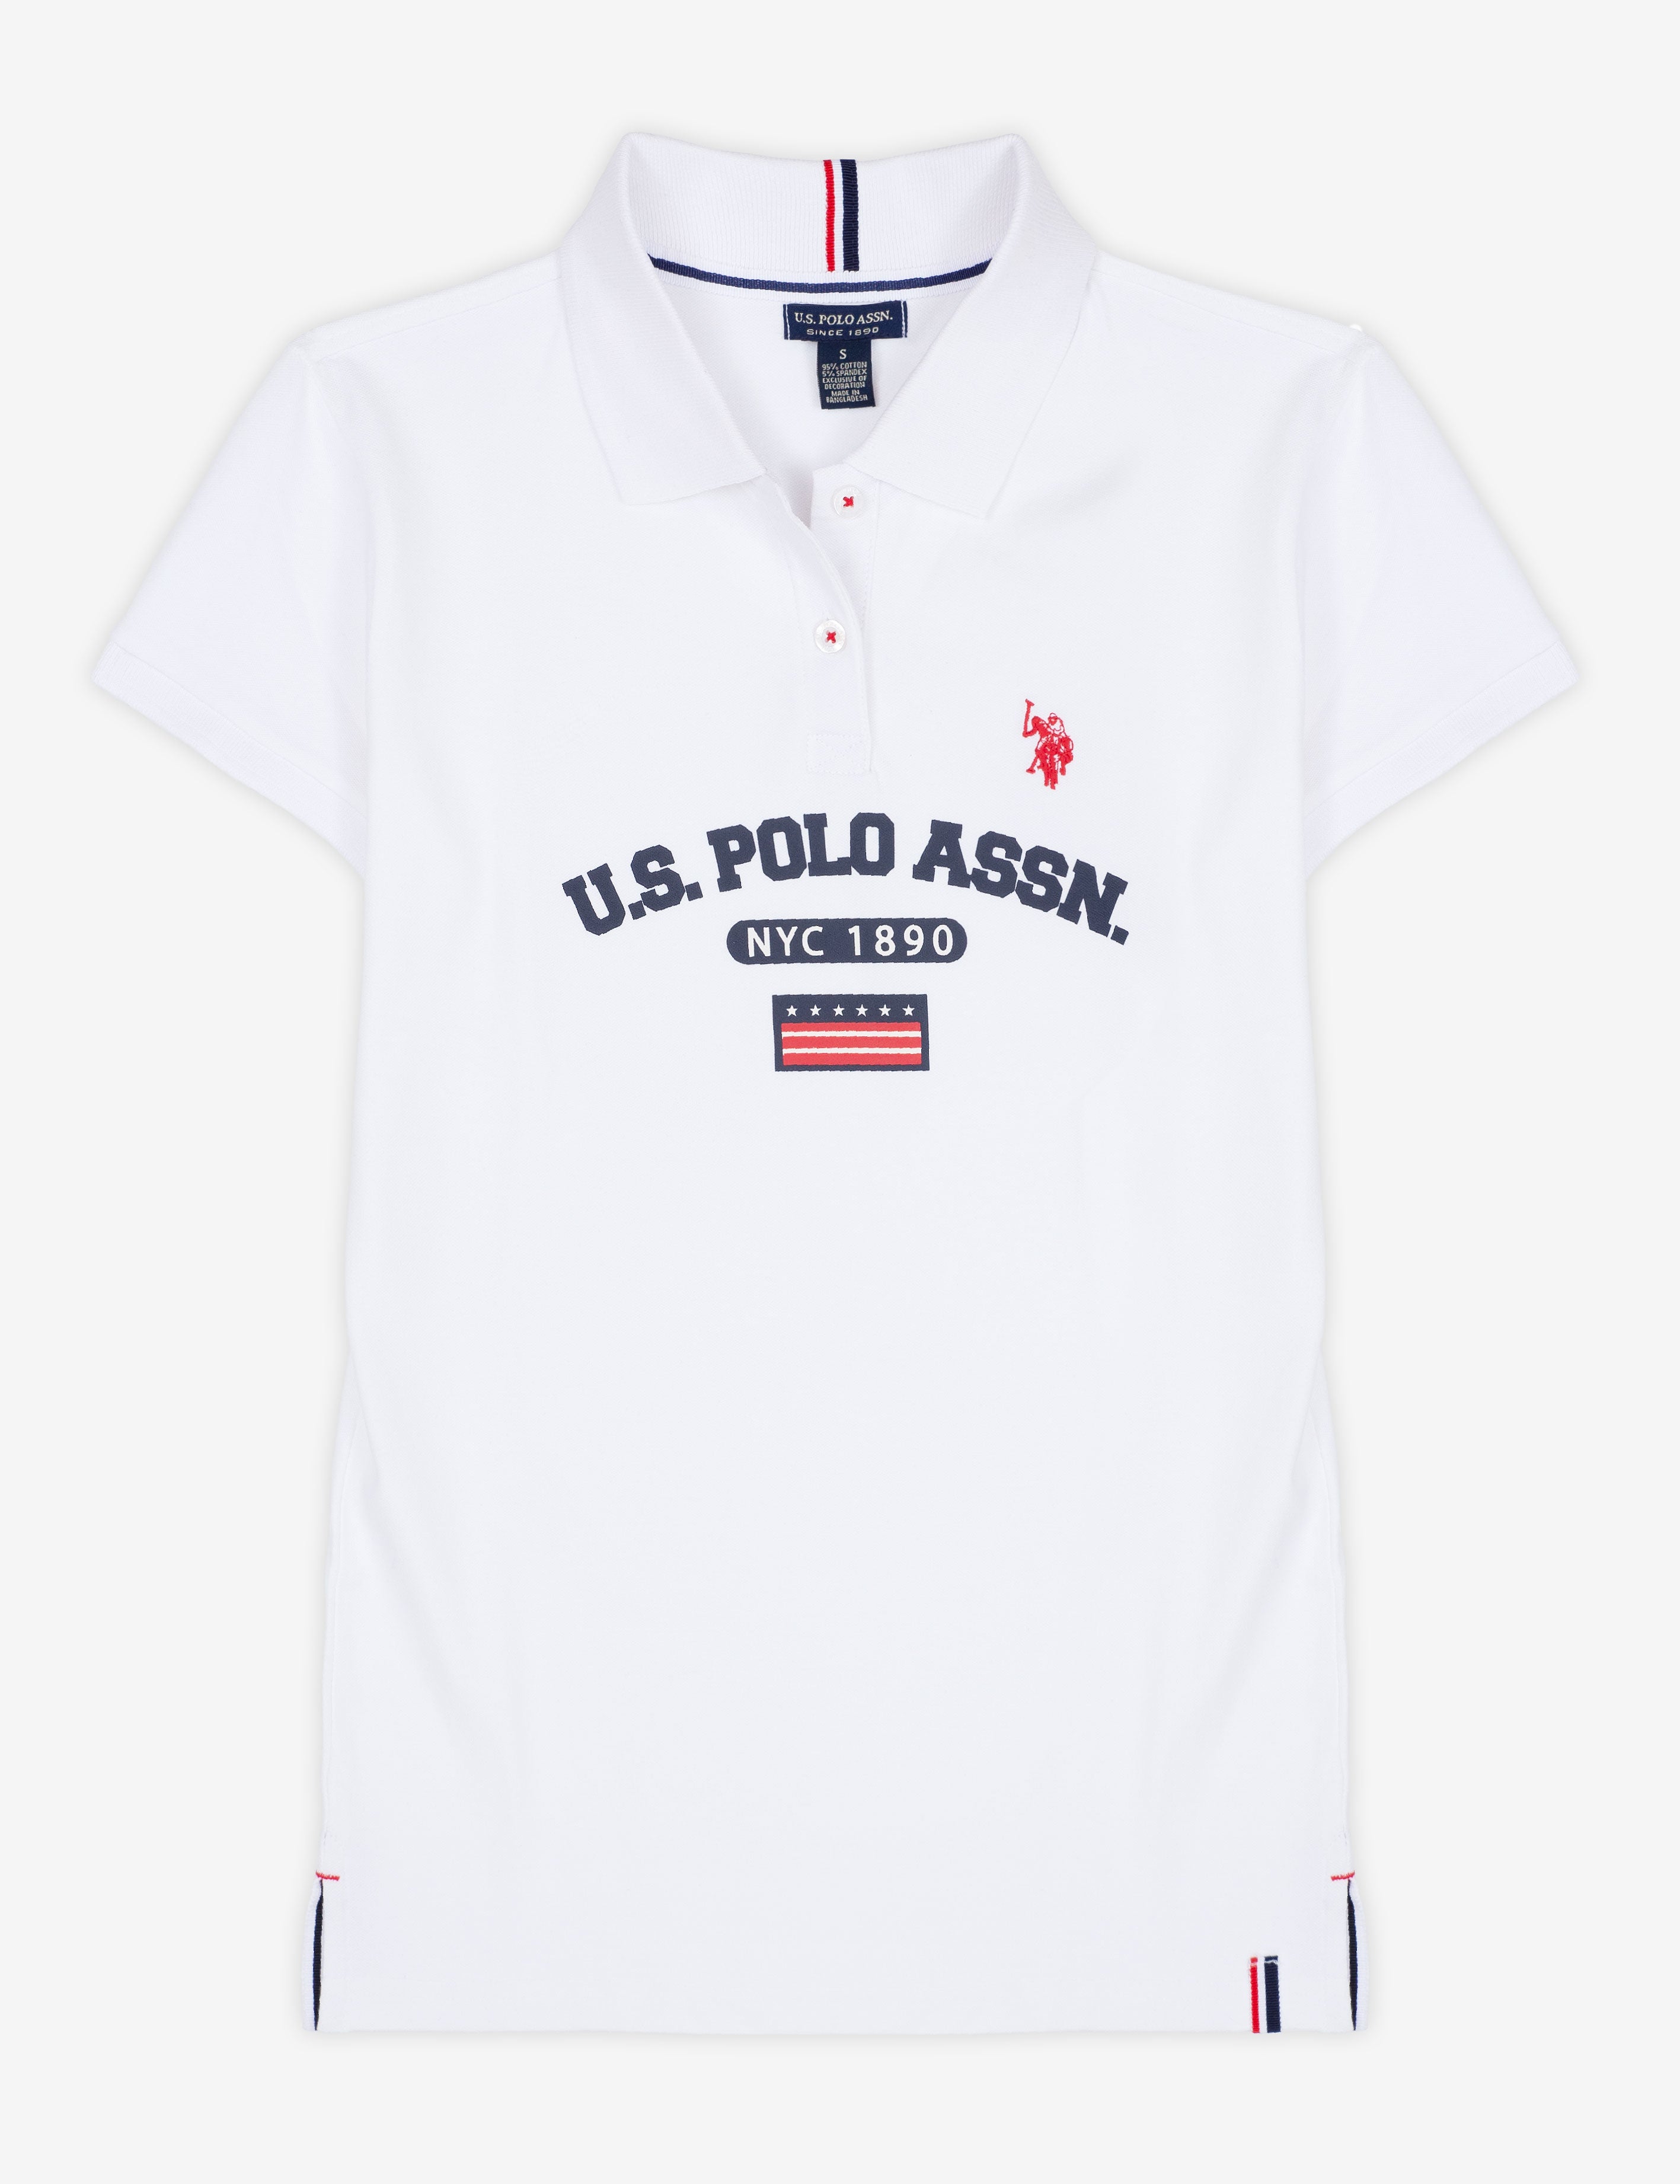 U.S. POLO ASSN. NEW YORK POLO SHIRT– U.S. Polo Assn.